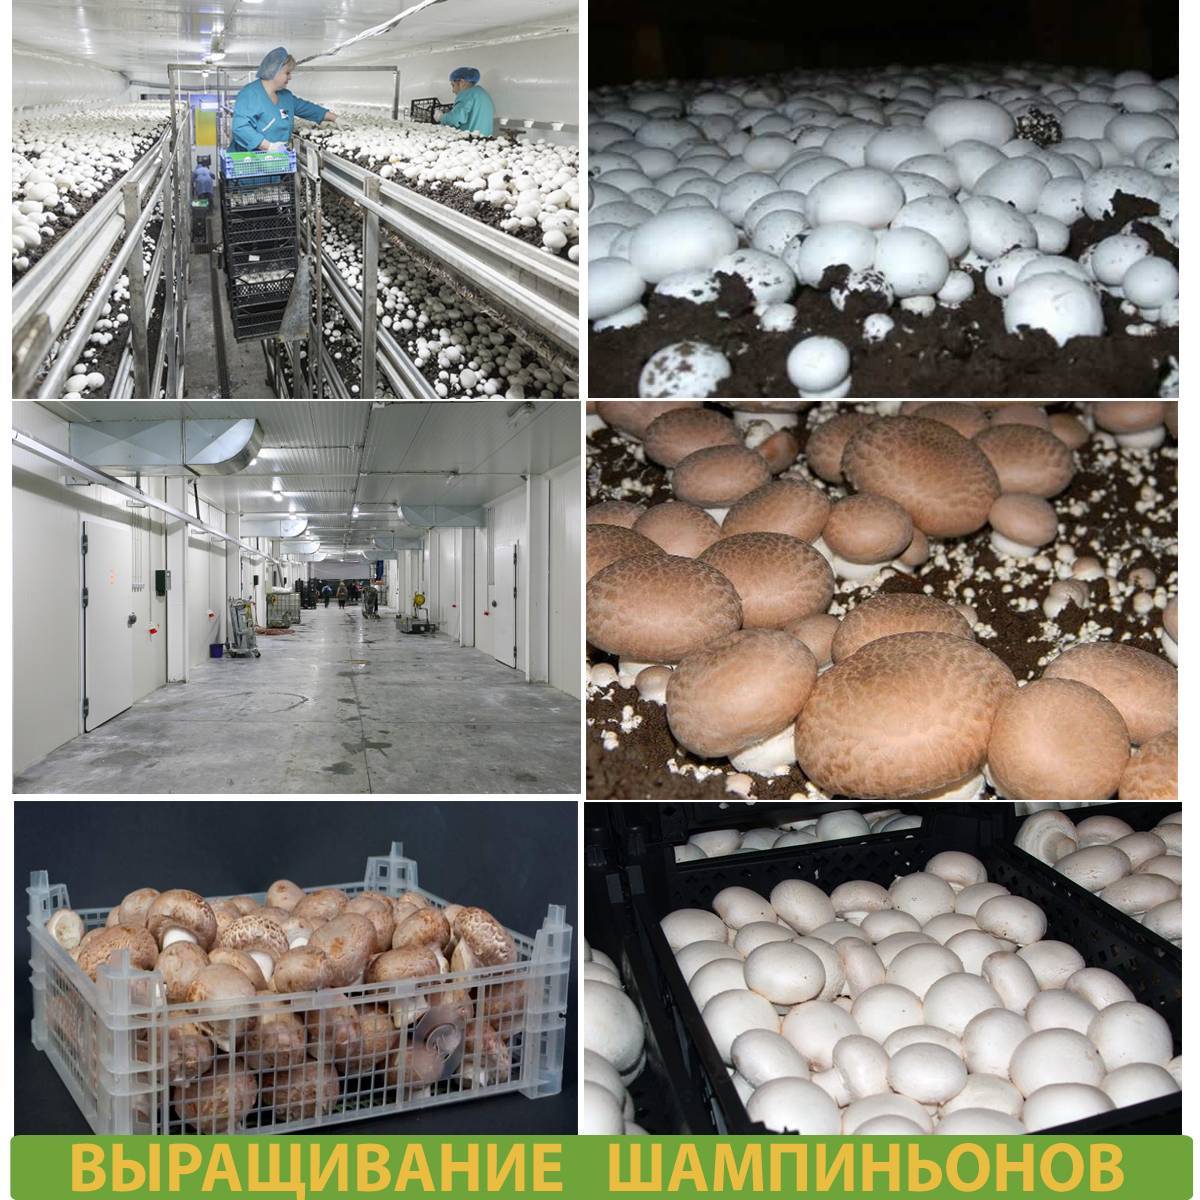 Пошаговая инструкция по выращиванию белых грибов в домашних условиях на приусадебном участке и подоконнике